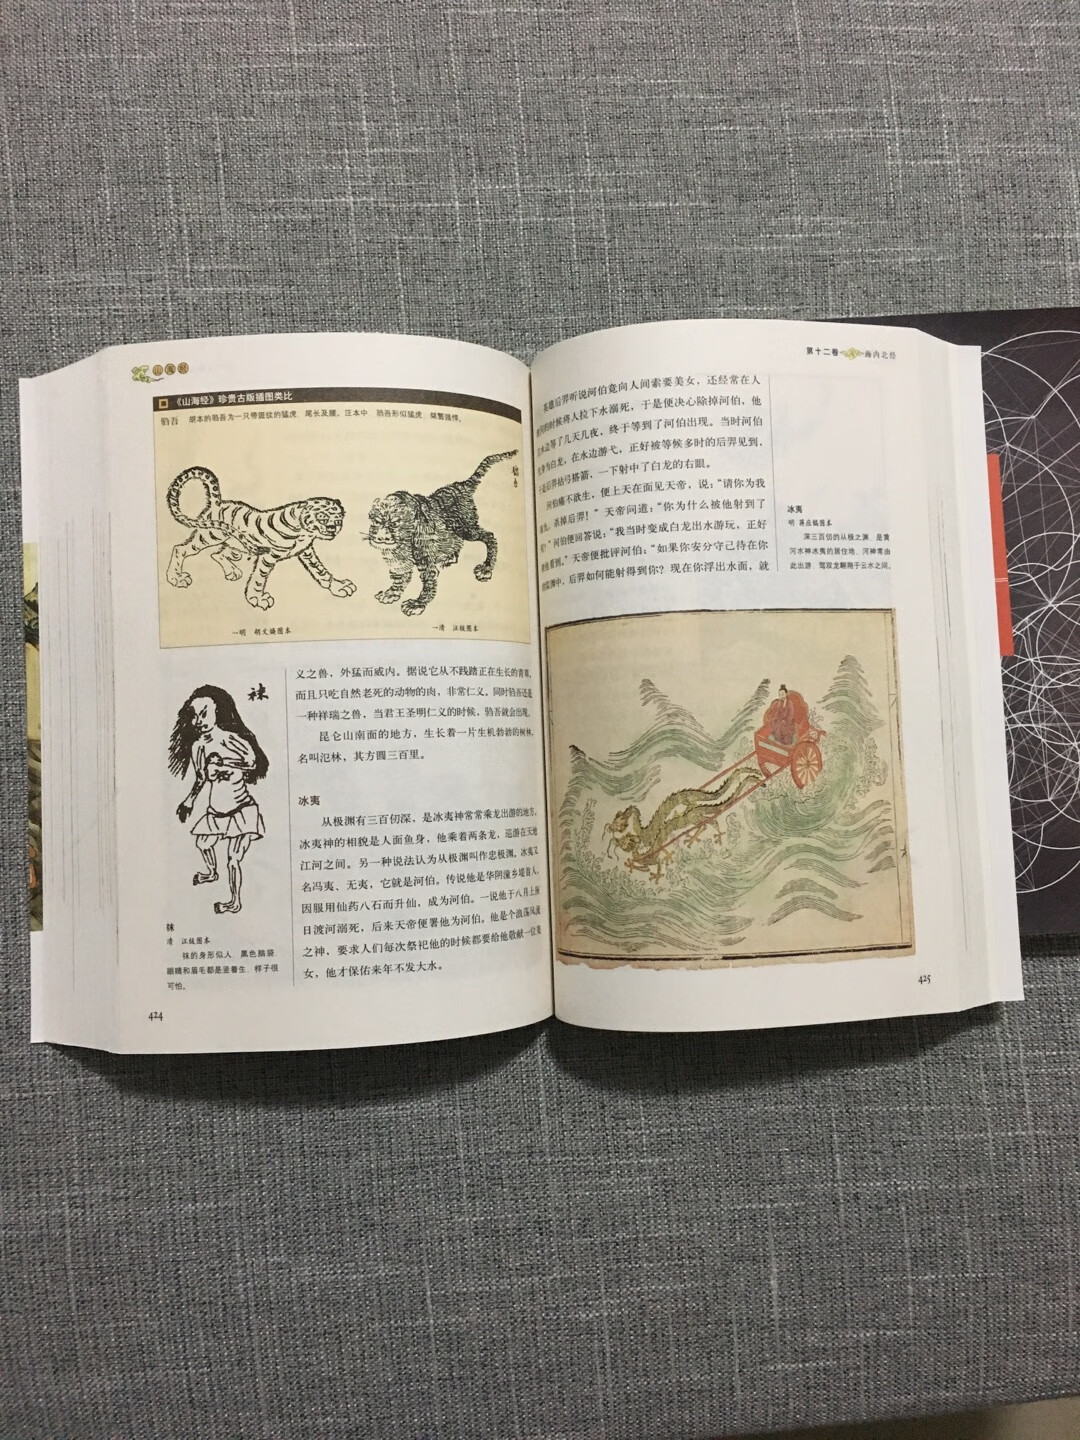 图文并茂，中国神话必读本。质量不错